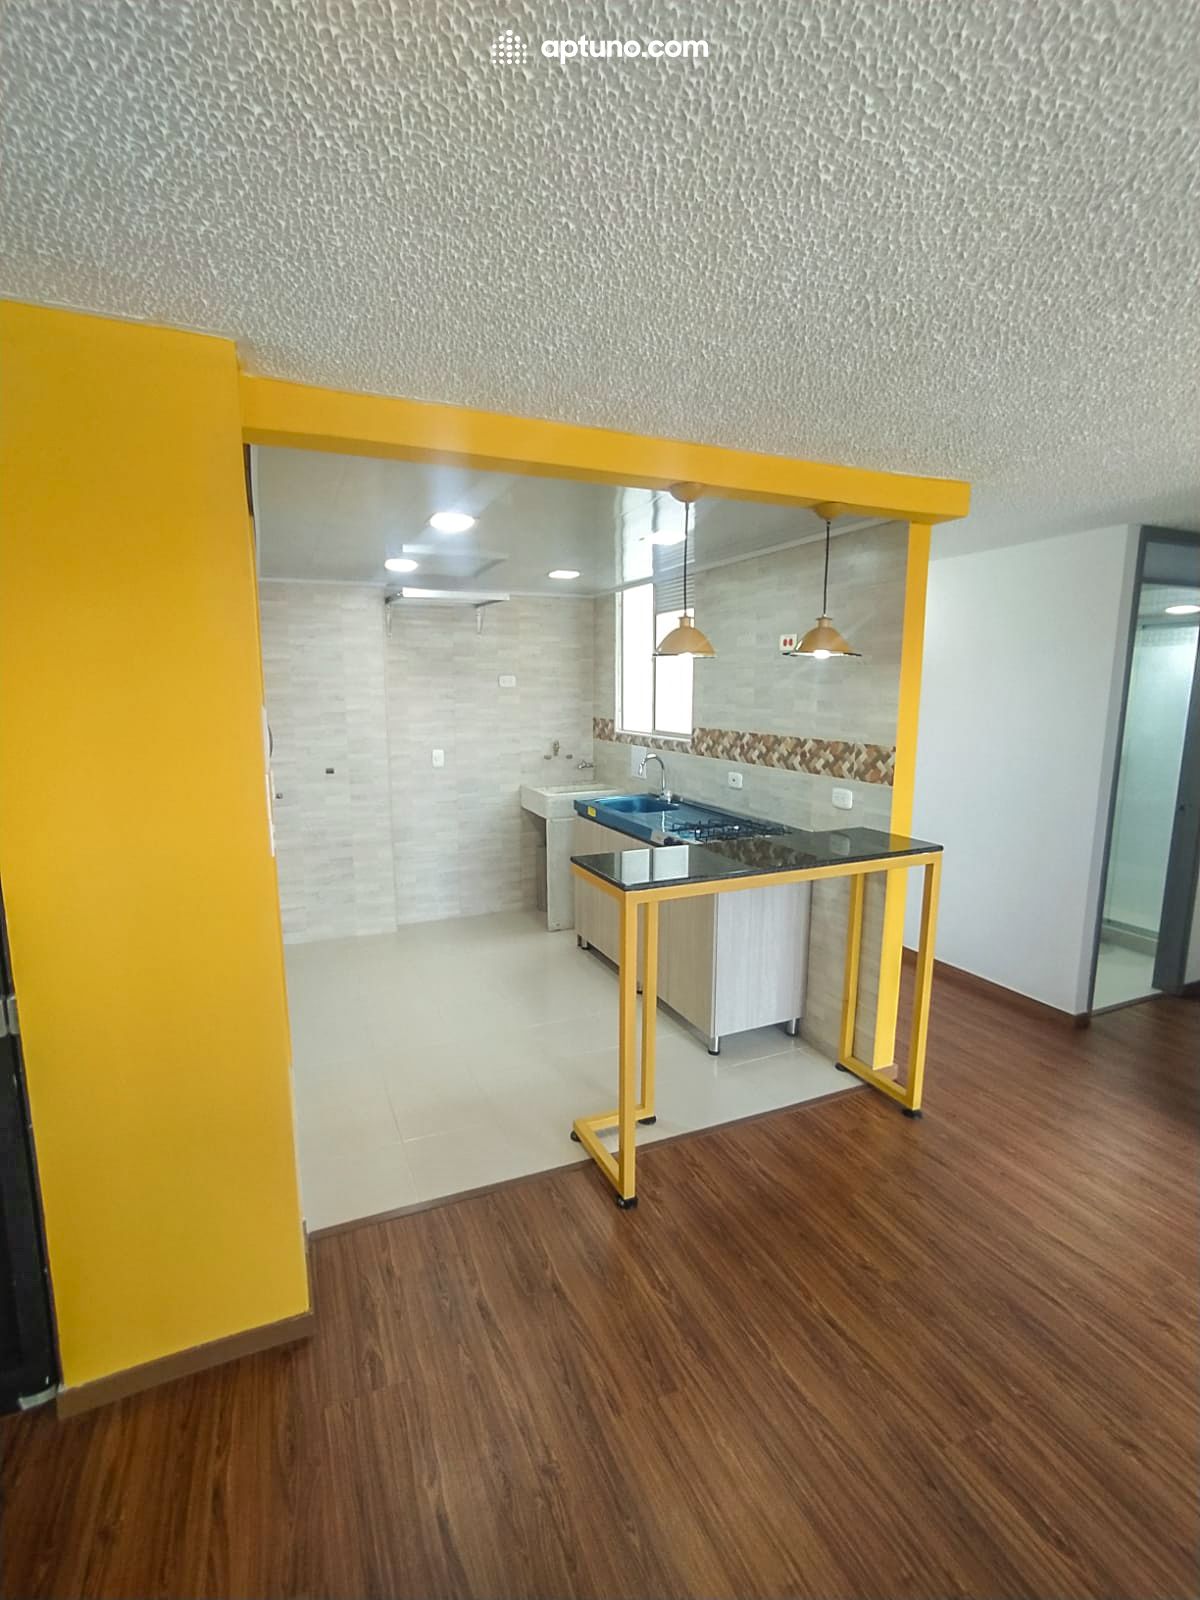 Apartamento en arriendo Tocancipá 62 m² - $ 900.000,00